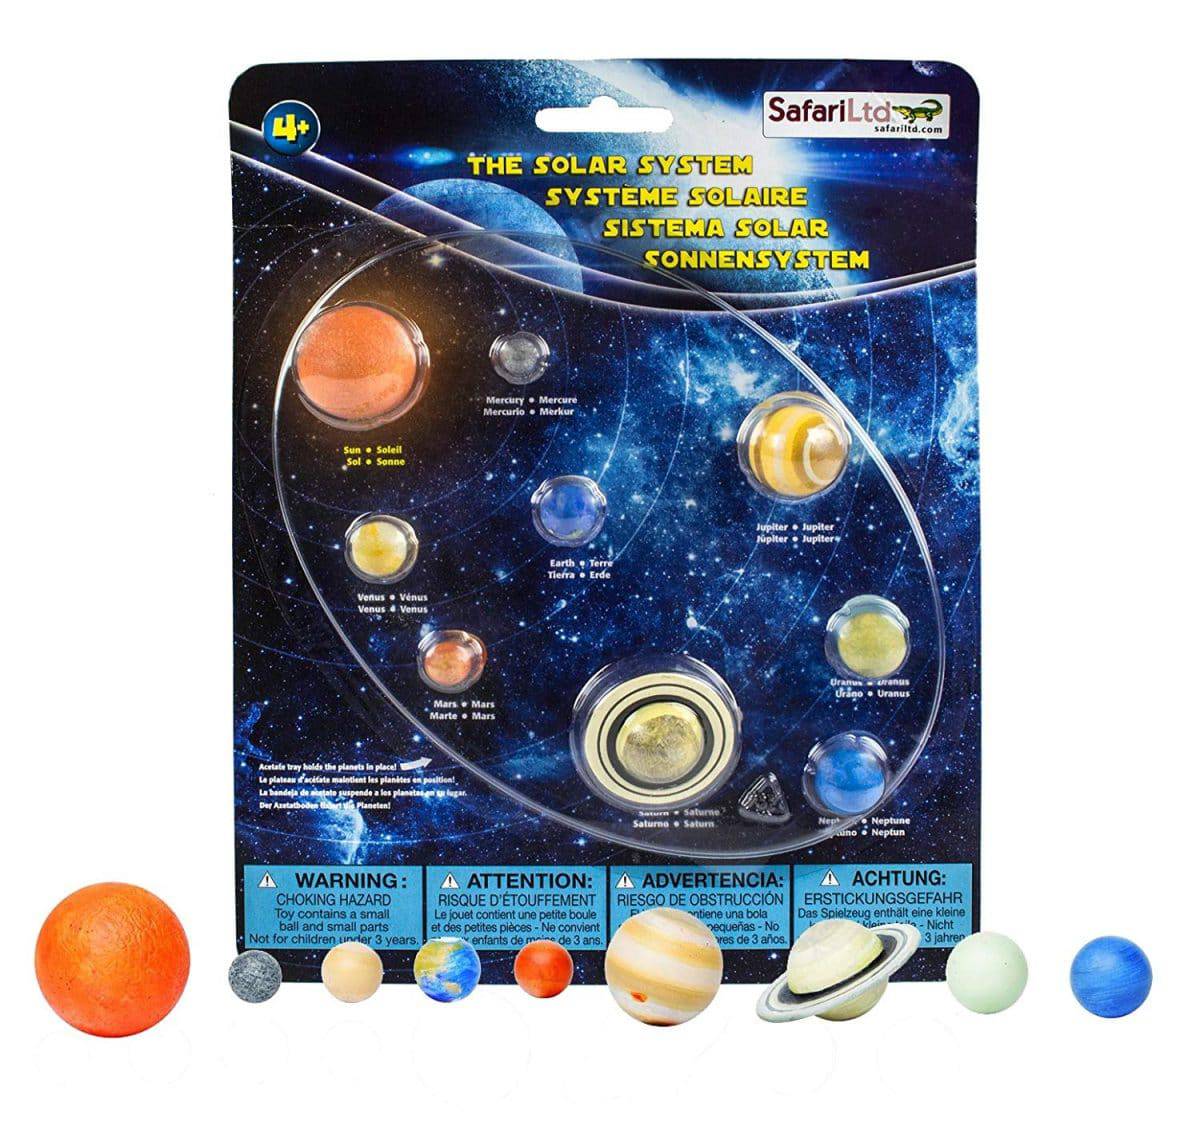 Best Solar System Toys For Kids To Buy 2020 Littleonemag